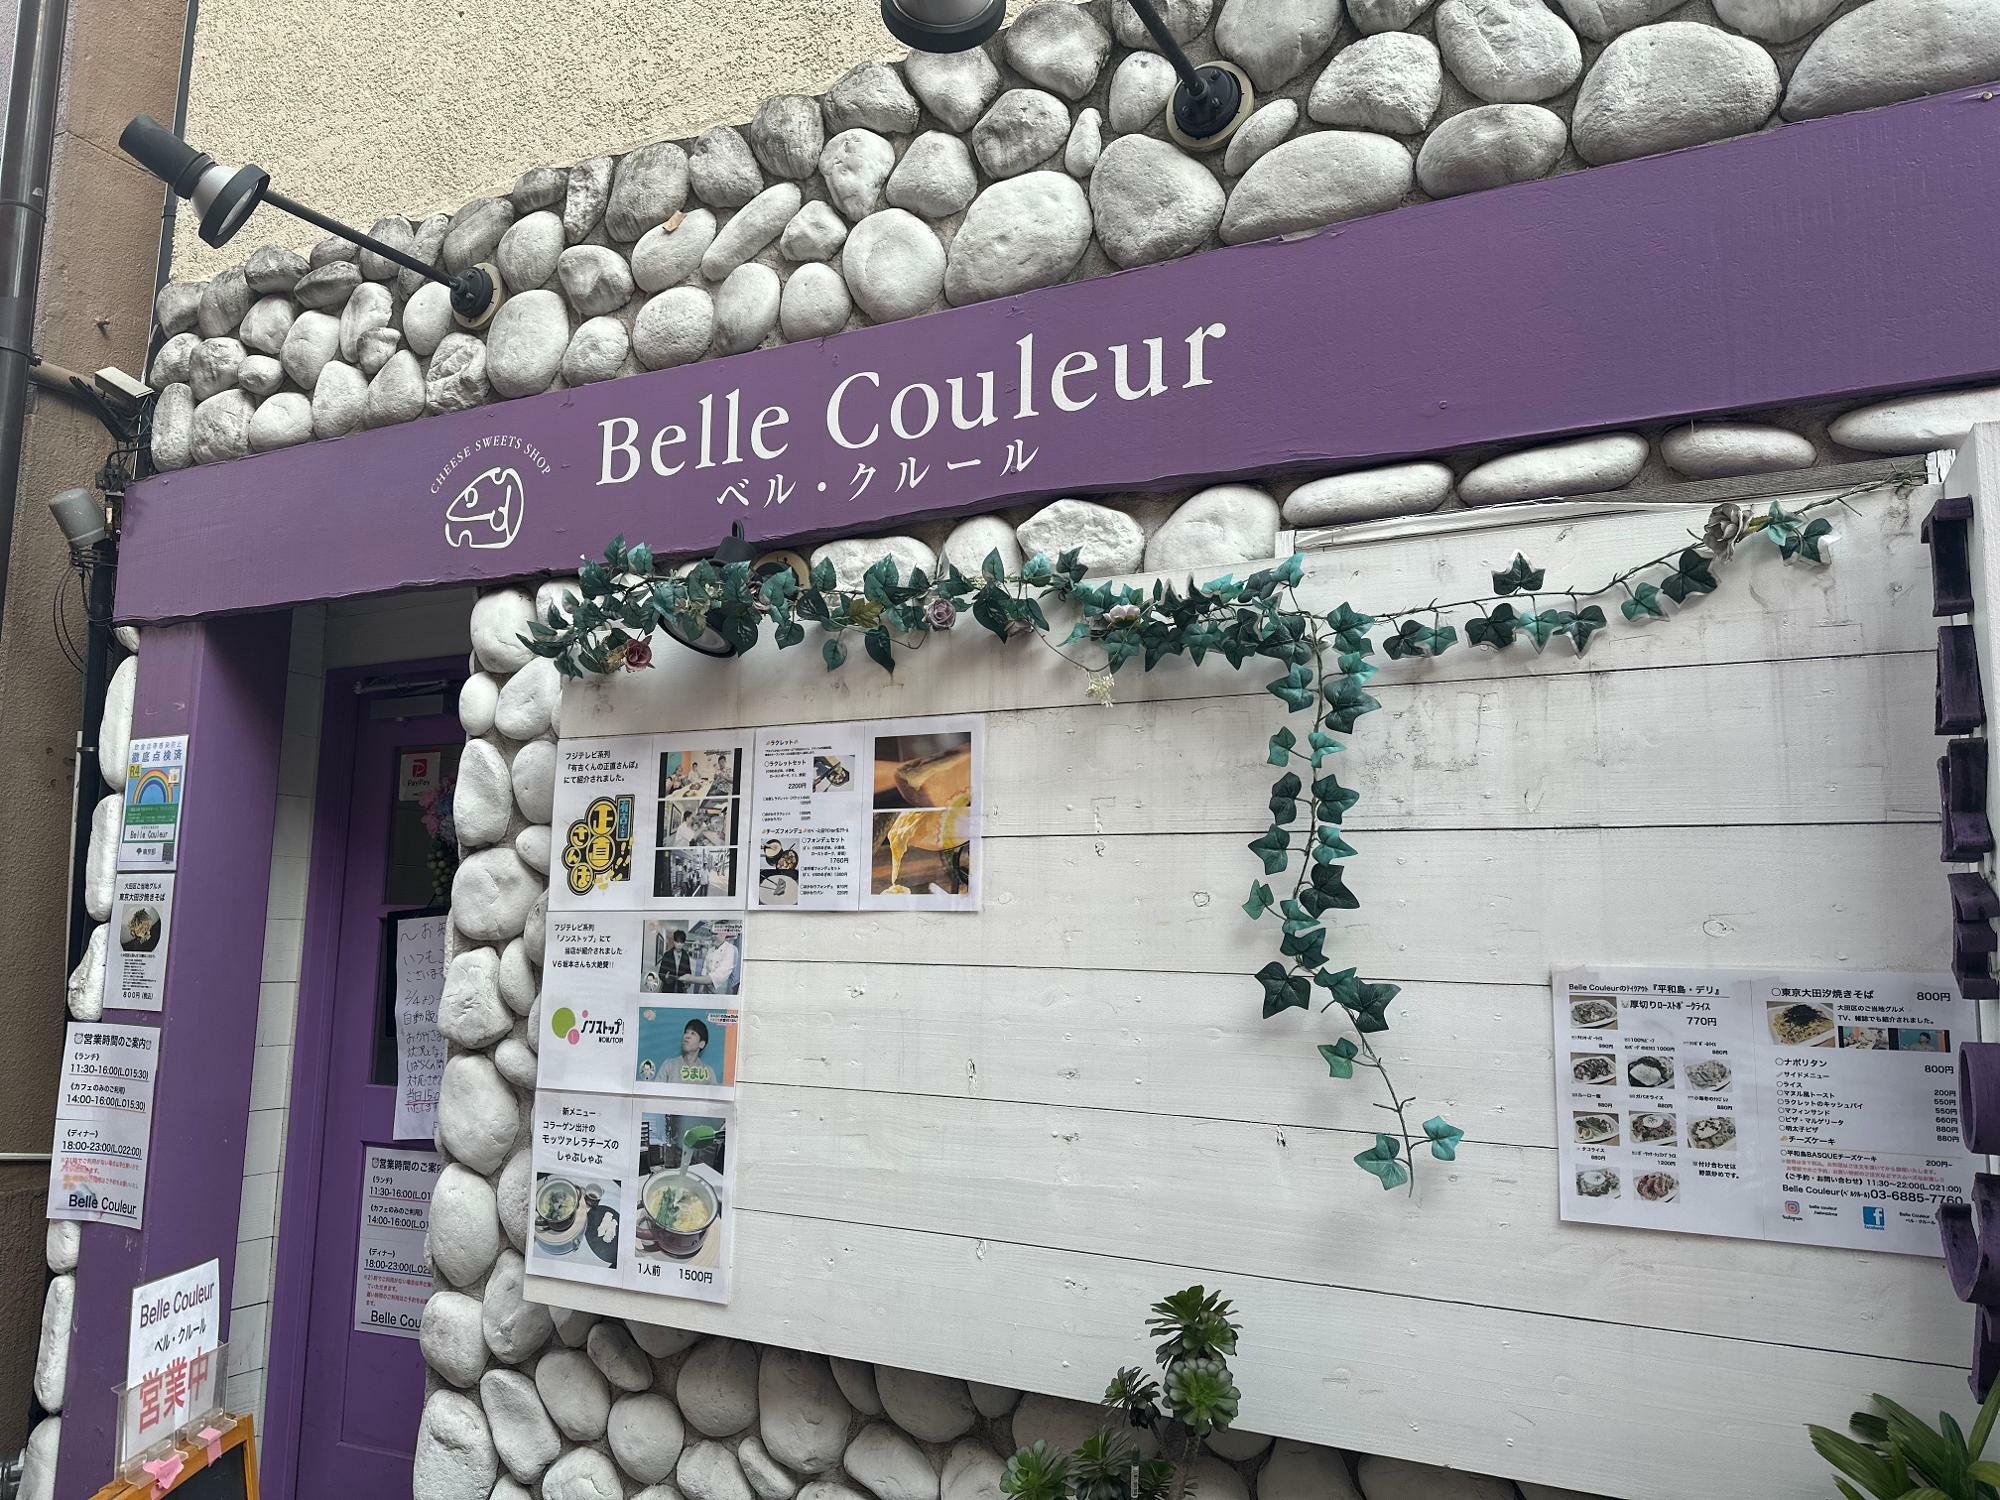 店名のBelle Couleurはフランス語で「美しい色彩」